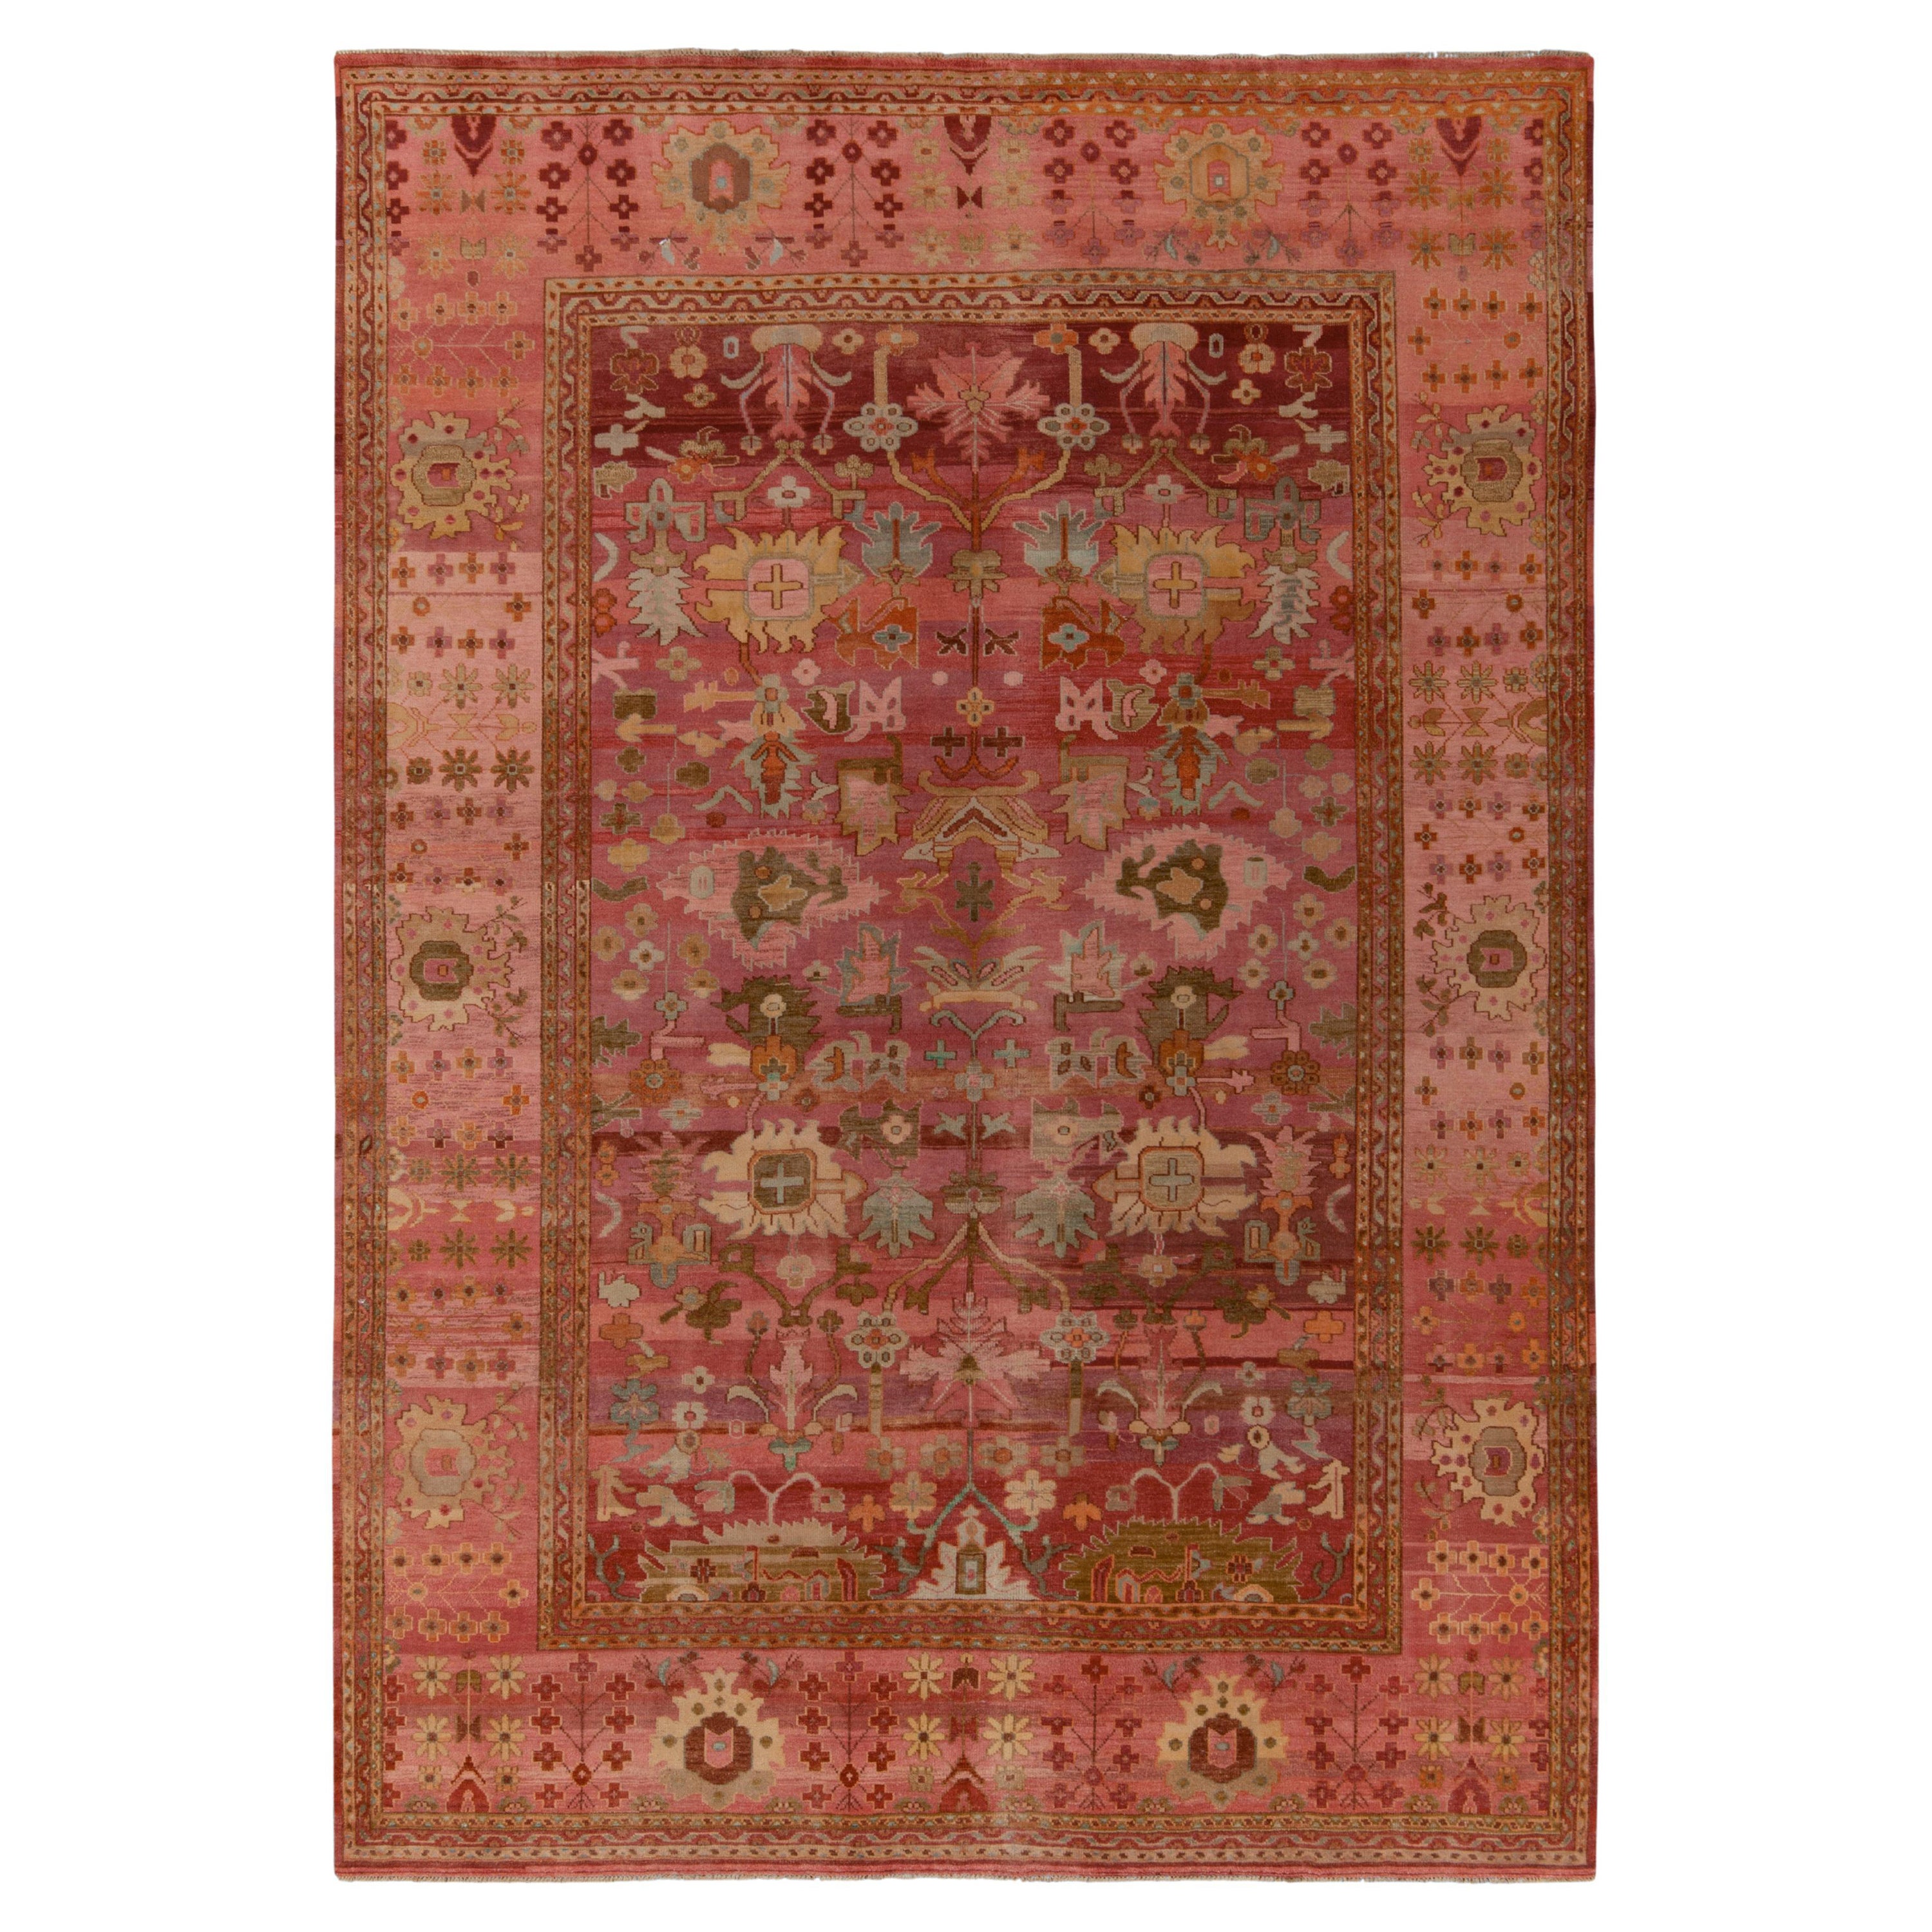 Tapis en soie de style classique de Rug & Kilim à motif floral rose, beige et marron